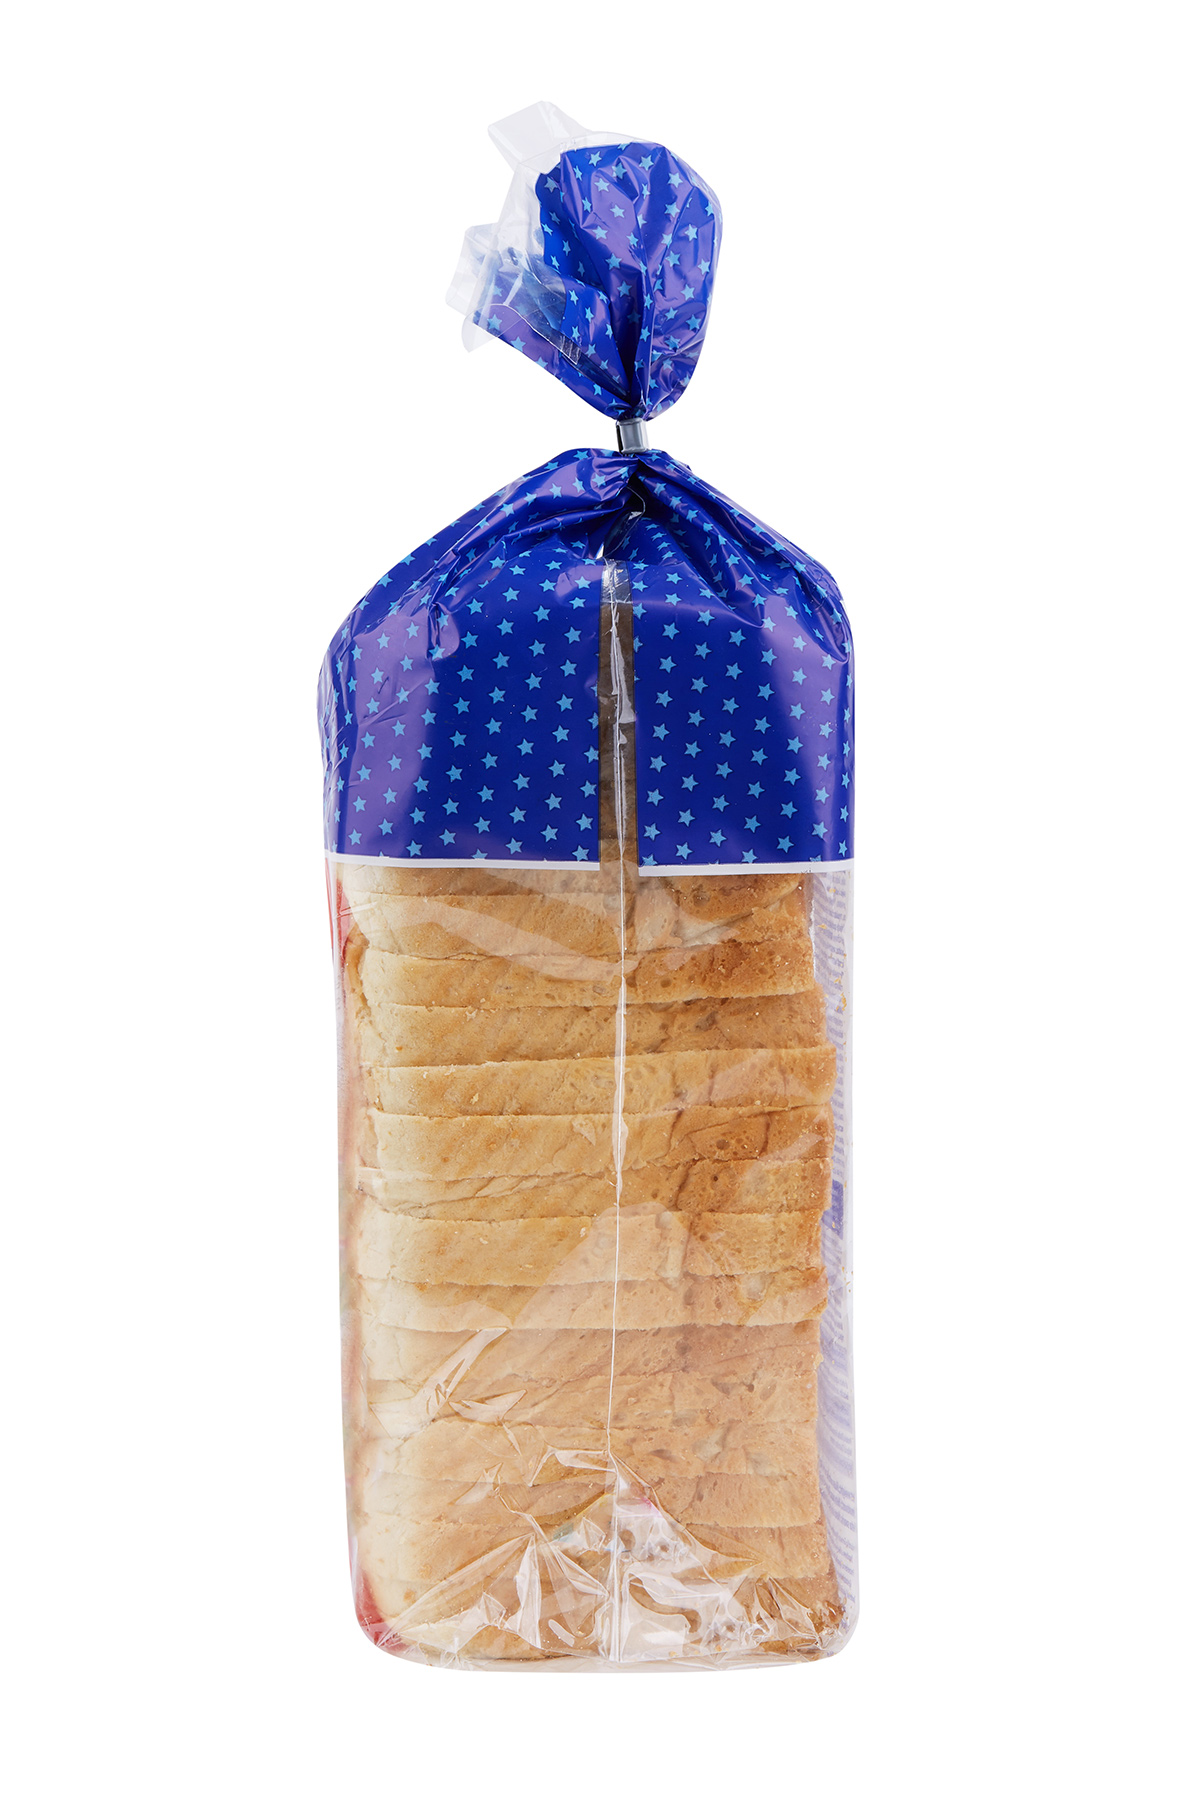 loaf of bread in bag